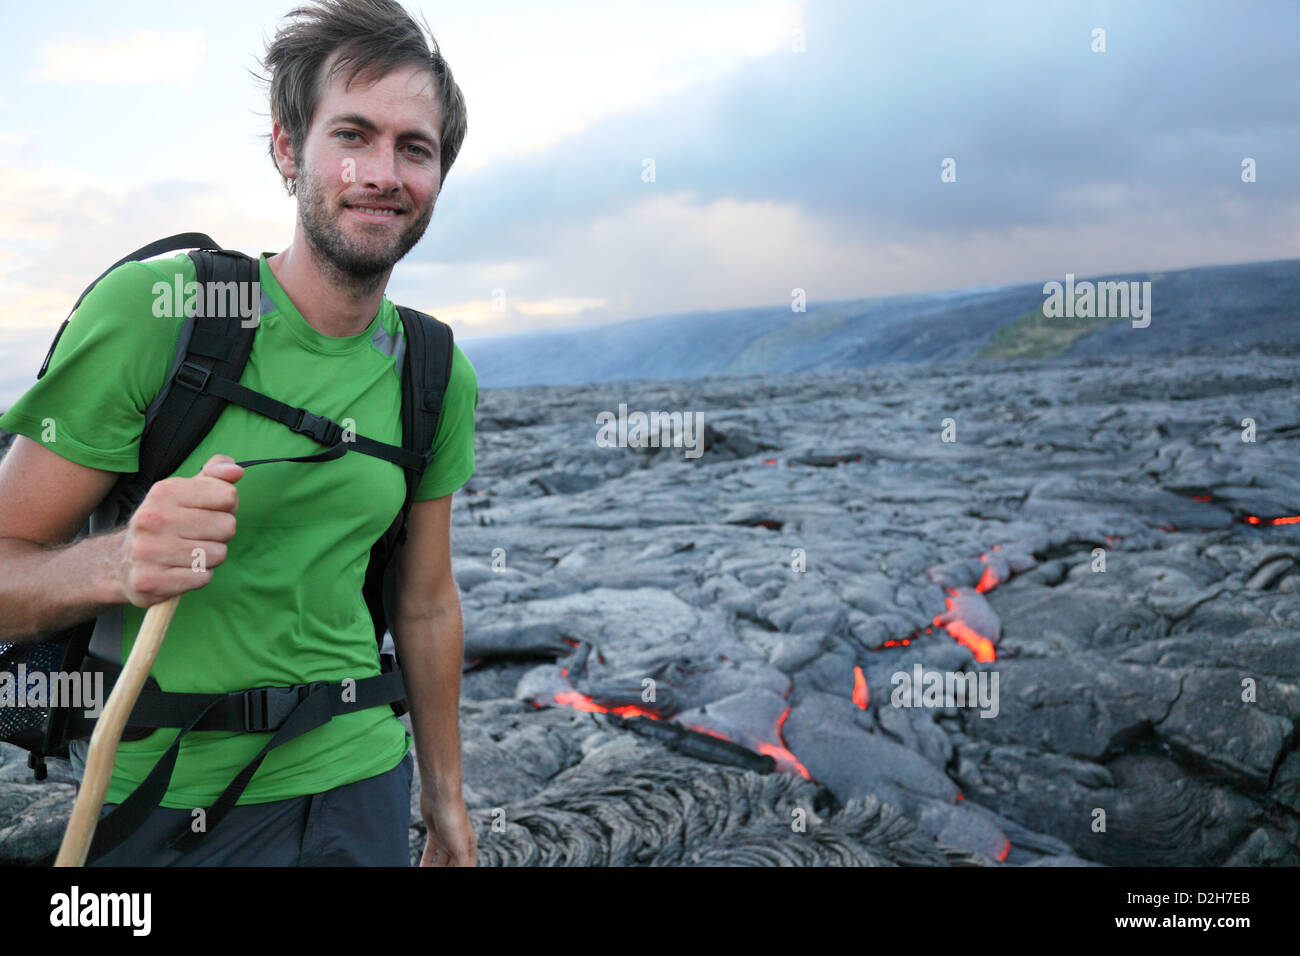 Hawaii randonneur randonnées par l'écoulement de lave du volcan Kilauea Hawaii Volcanoes National Park, USA. Young caucasian man Banque D'Images